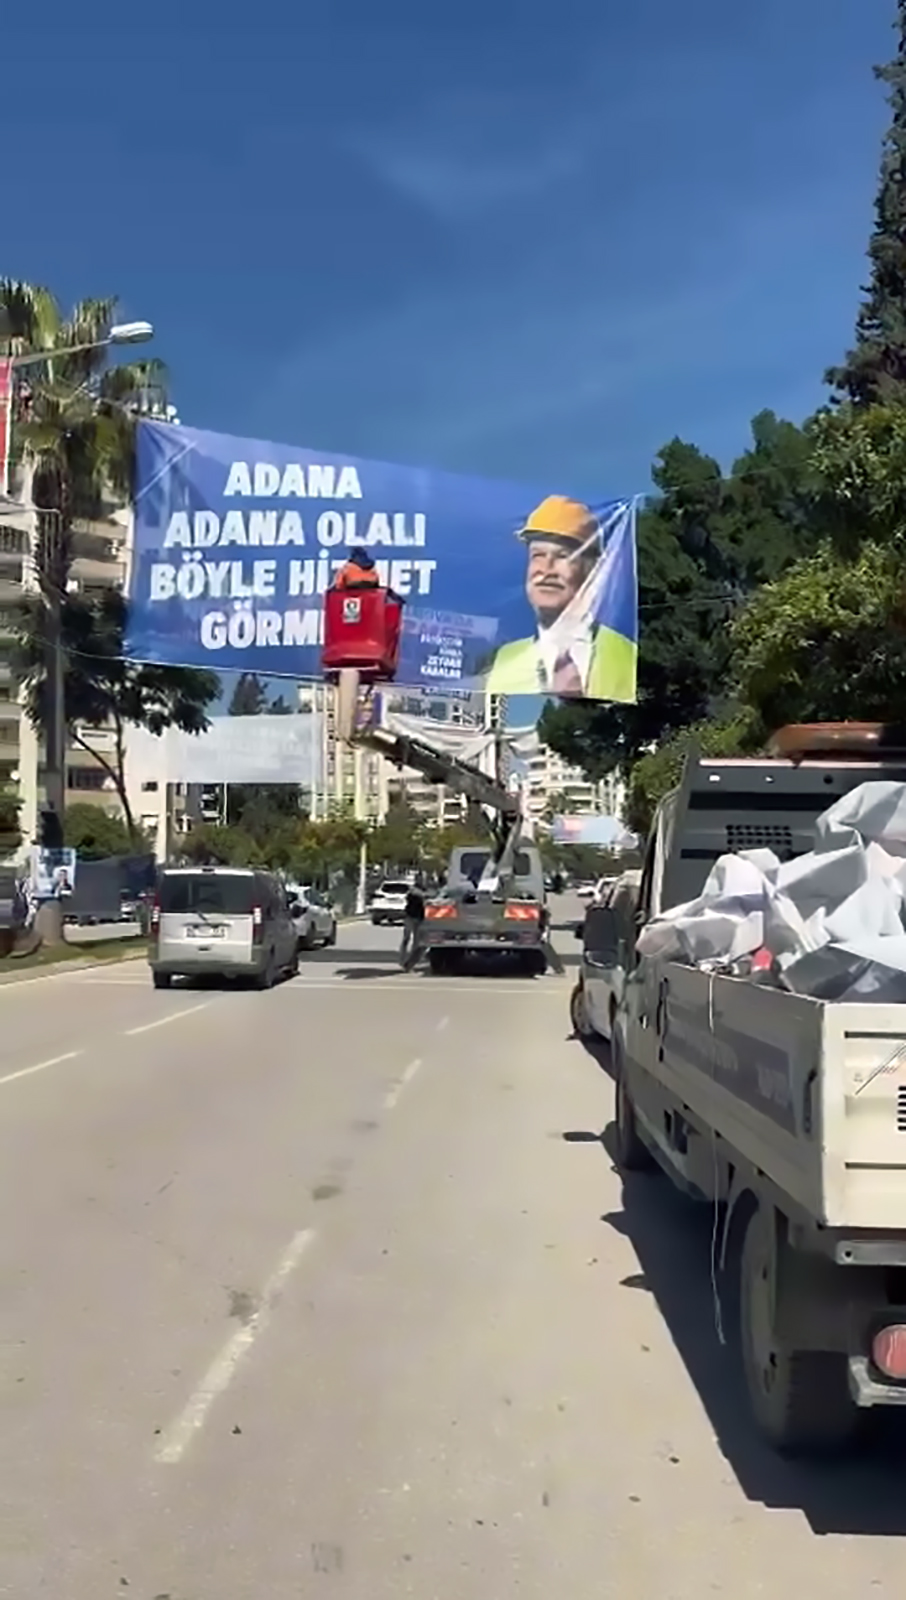 Adana Goruntu Kirliligi Ve Olumlu Trafik 25820 (3)